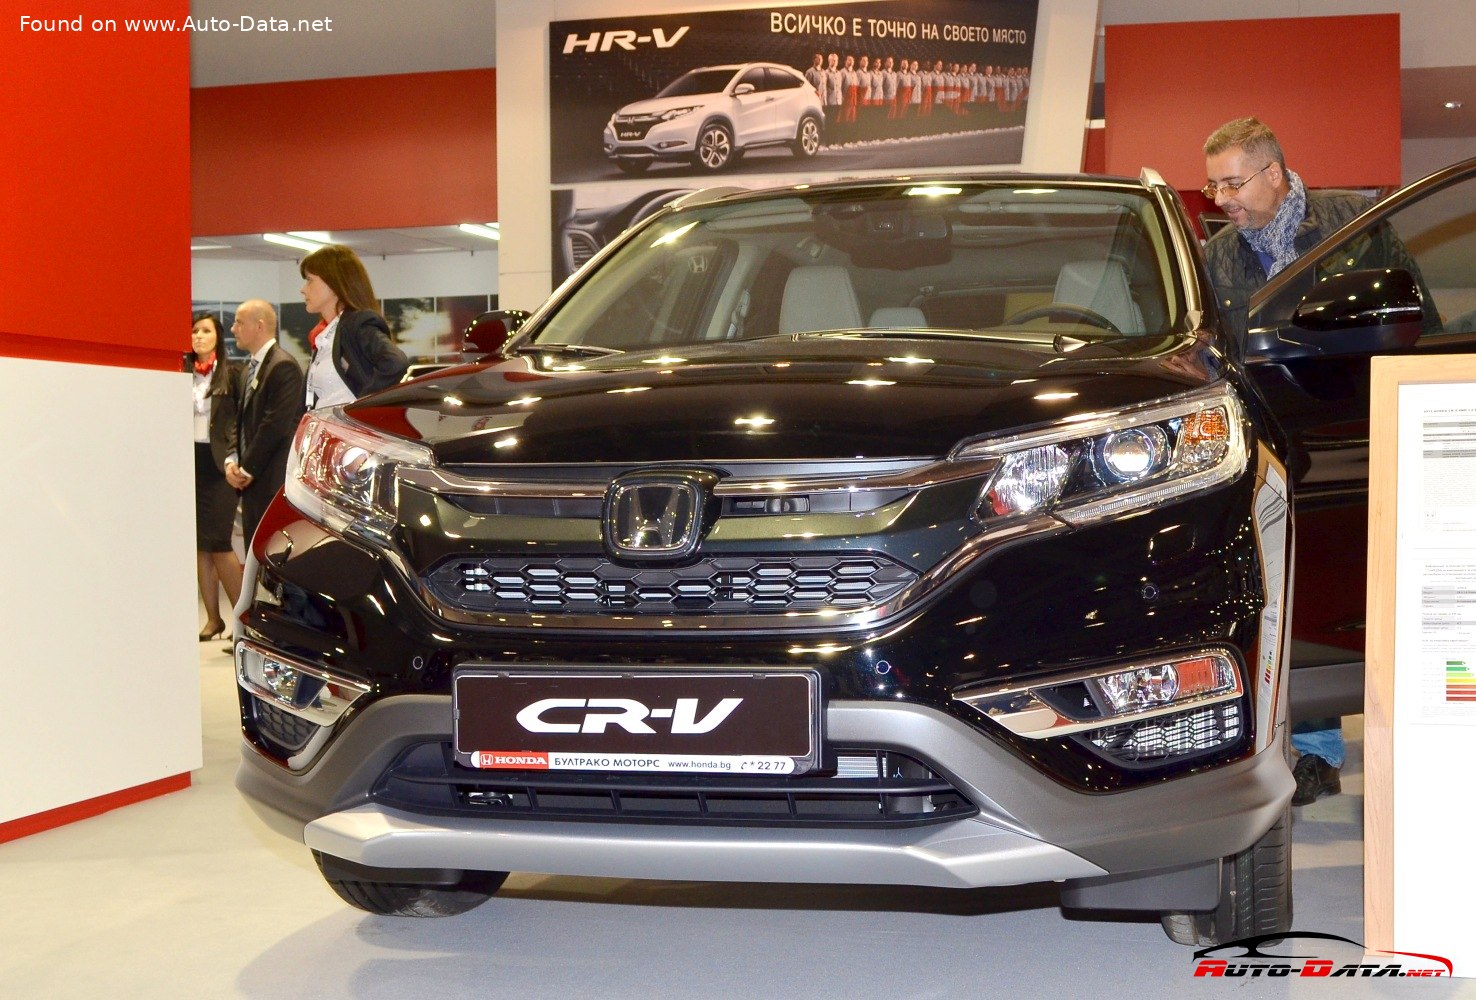 2015 Honda CRV IV (facelift 2015) 1.6 iDTEC (160 Hp) AWD